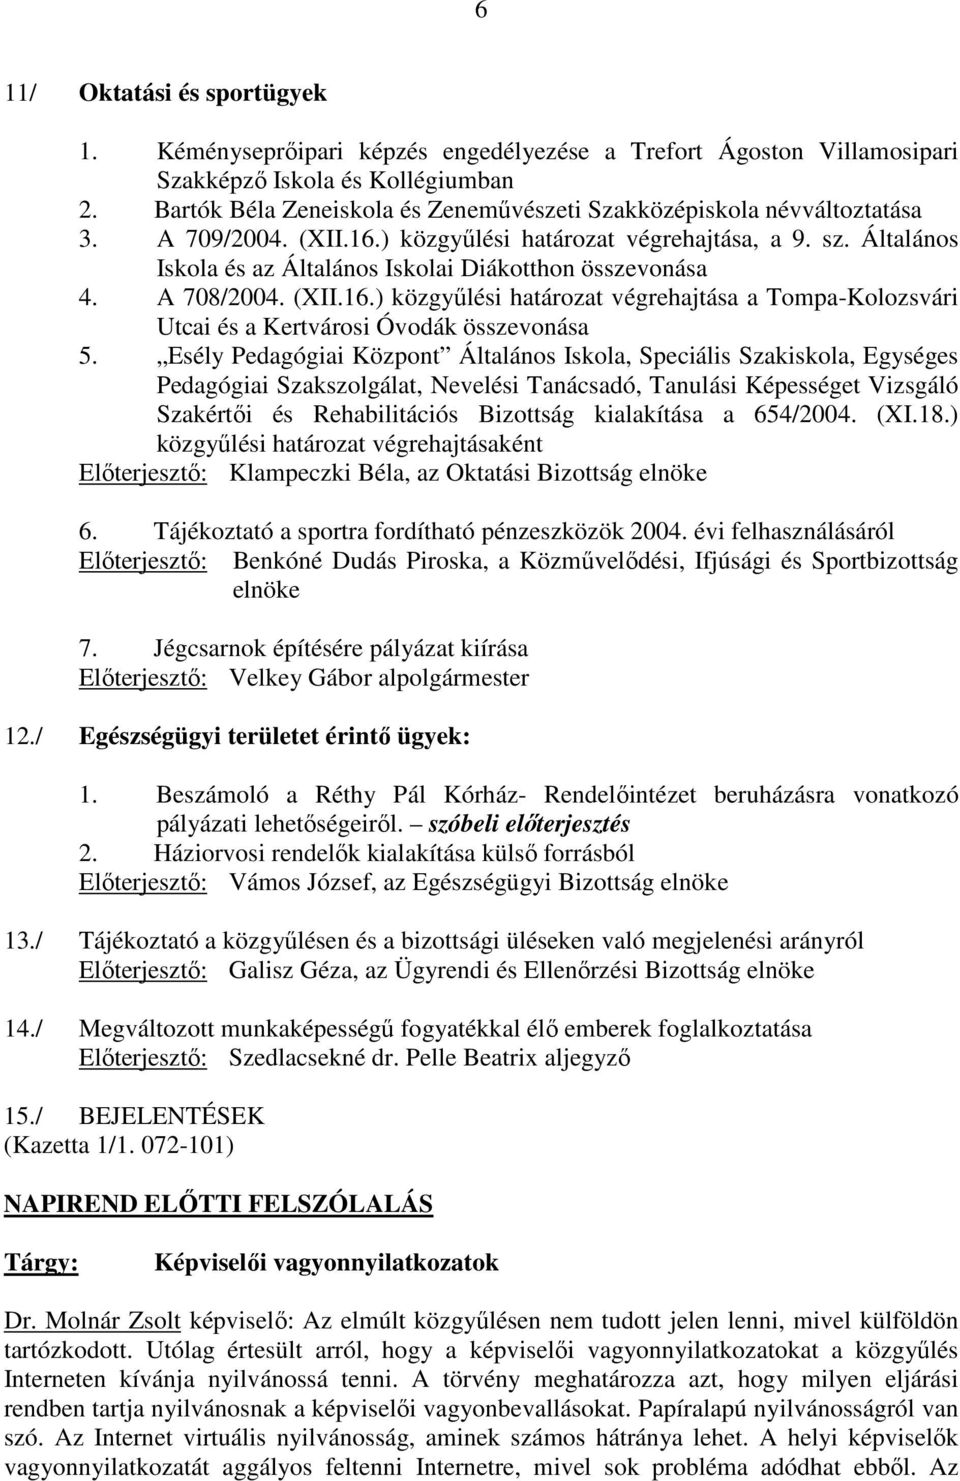 Általános Iskola és az Általános Iskolai Diákotthon összevonása 4. A 708/2004. (XII.16.) közgyőlési határozat végrehajtása a Tompa-Kolozsvári Utcai és a Kertvárosi Óvodák összevonása 5.